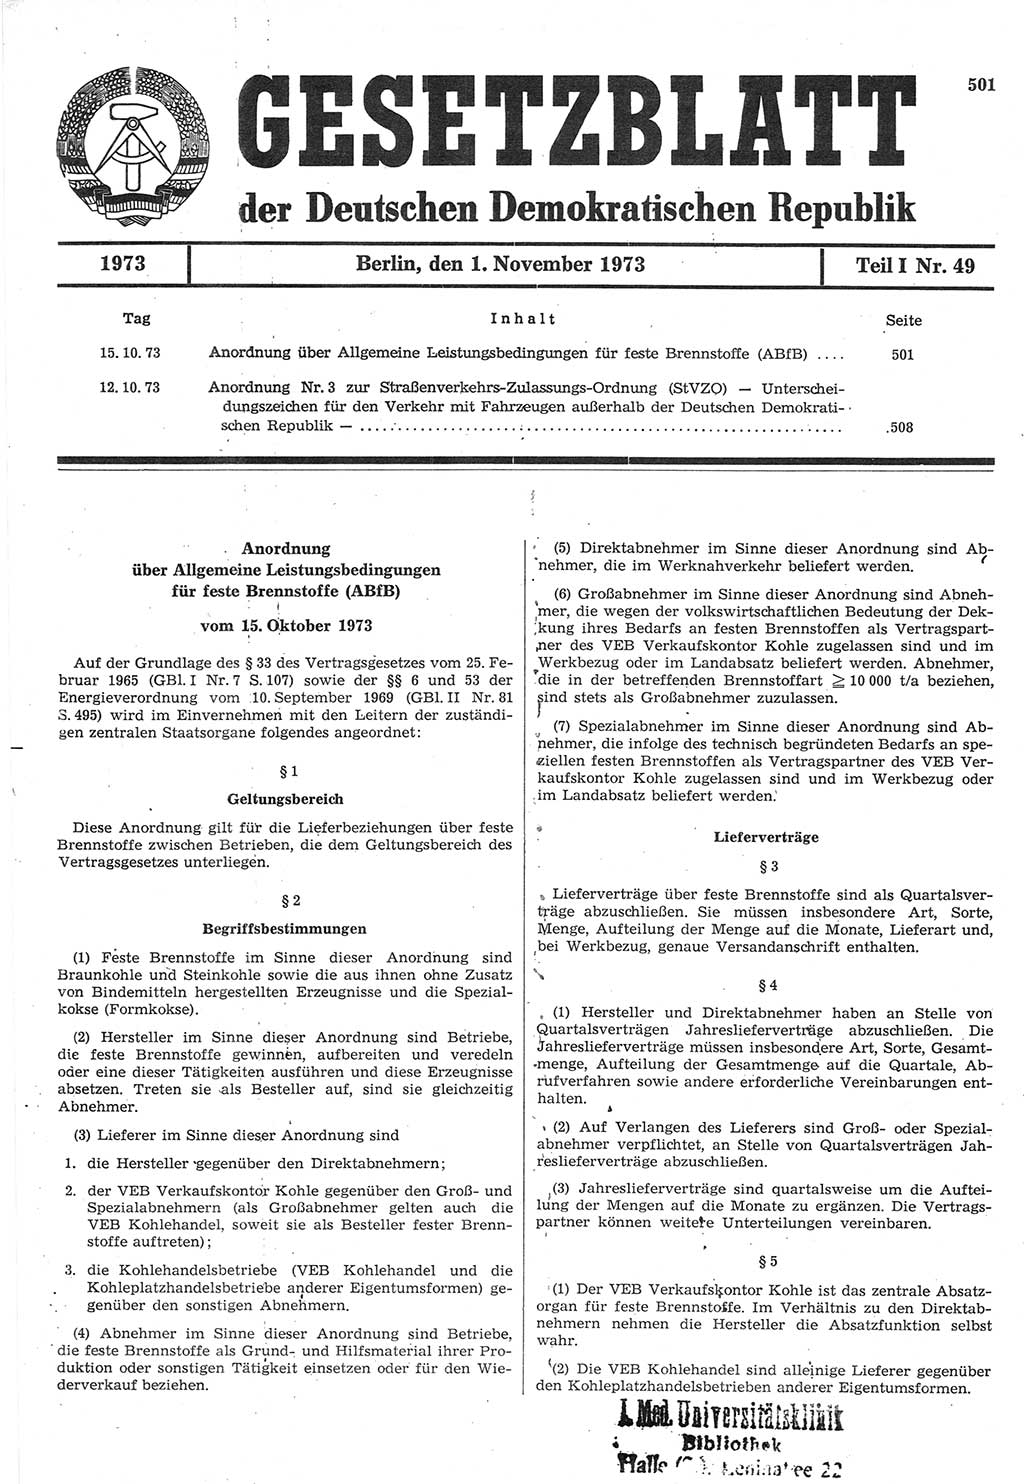 Gesetzblatt (GBl.) der Deutschen Demokratischen Republik (DDR) Teil Ⅰ 1973, Seite 501 (GBl. DDR Ⅰ 1973, S. 501)